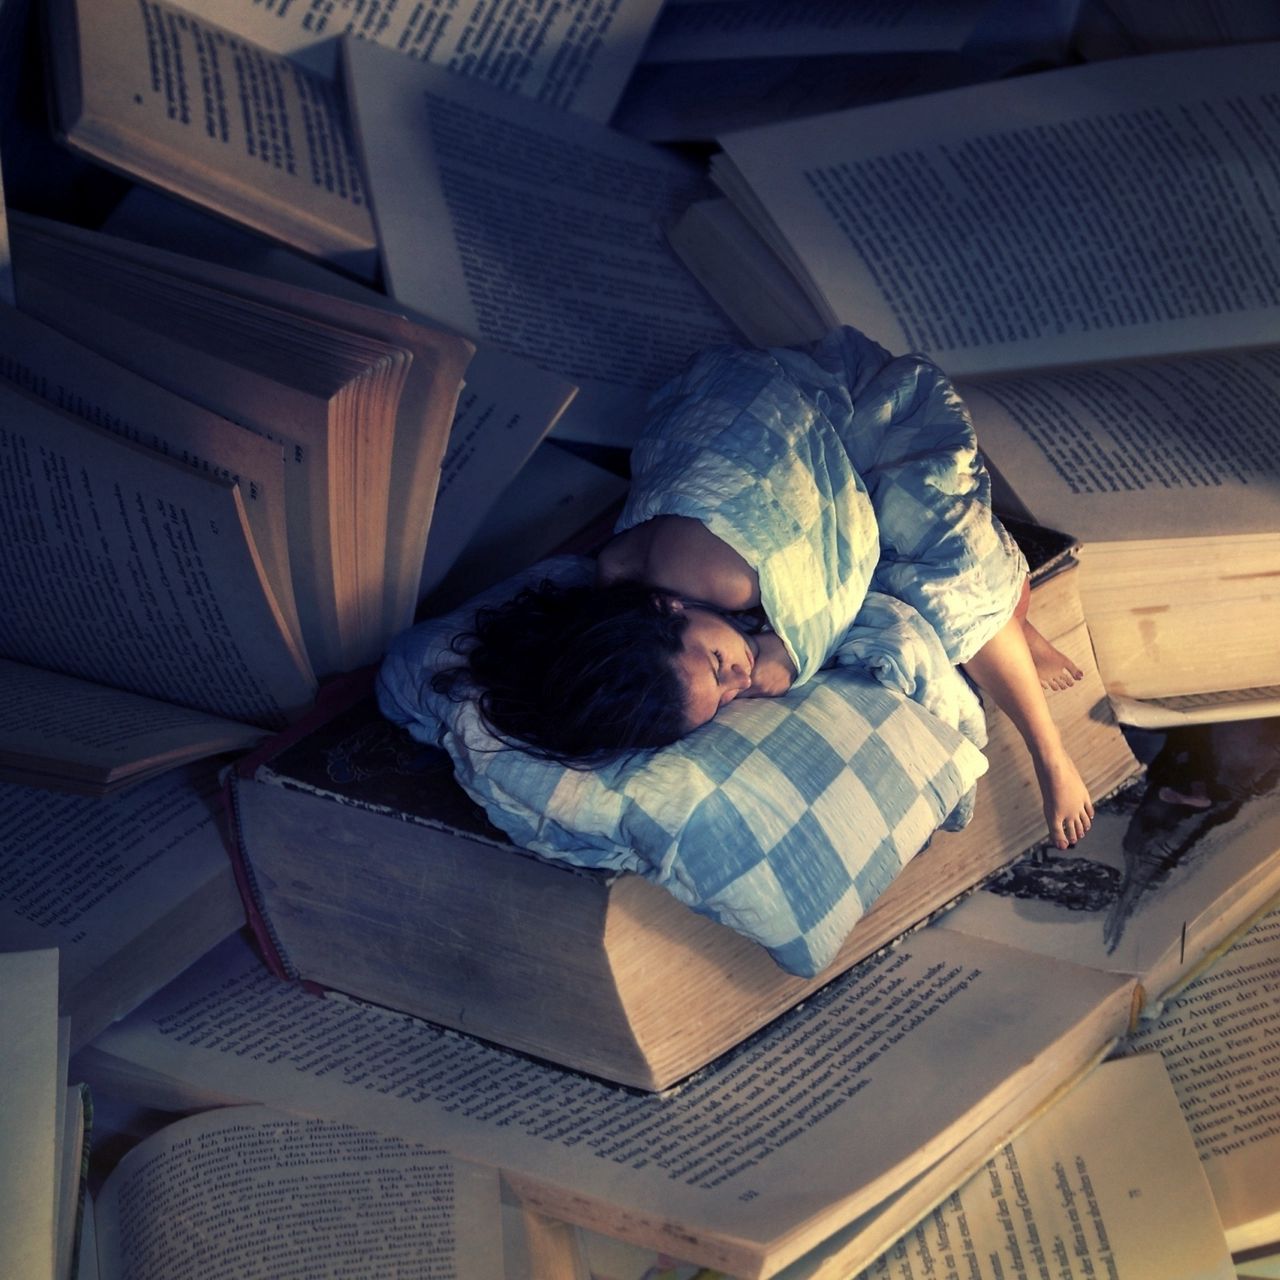 Читать книгу и спать. Девушка с книгой. Спящий человек. Заснул с книгой.